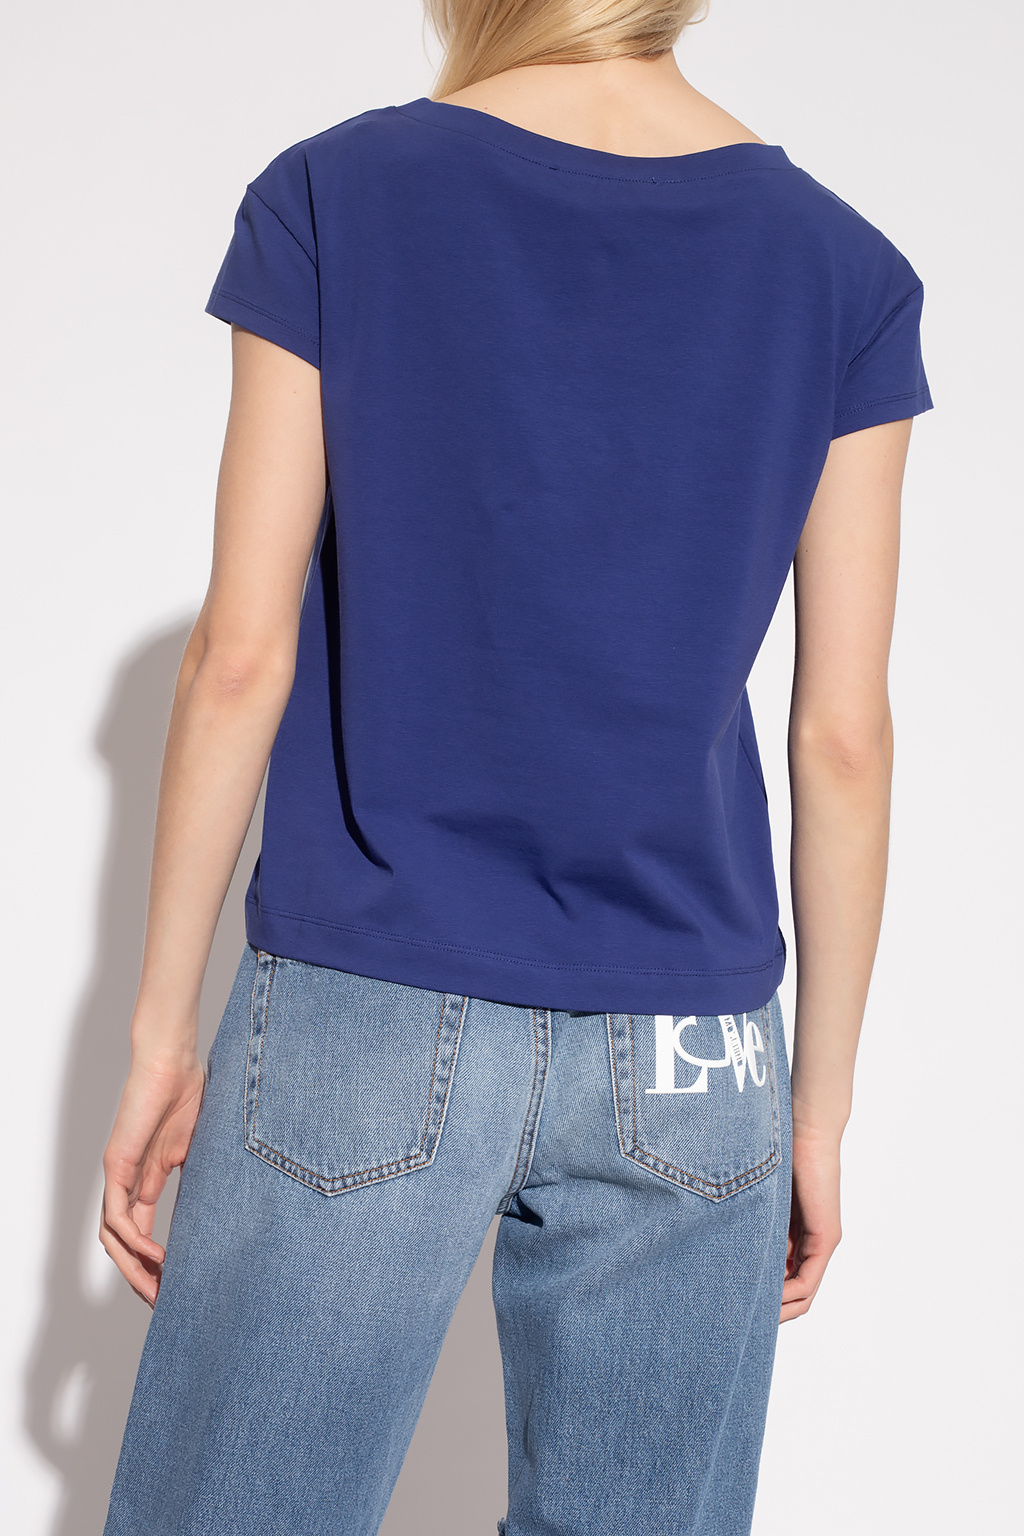 Moschino Monogrammed denim shirt, Women's Clothing